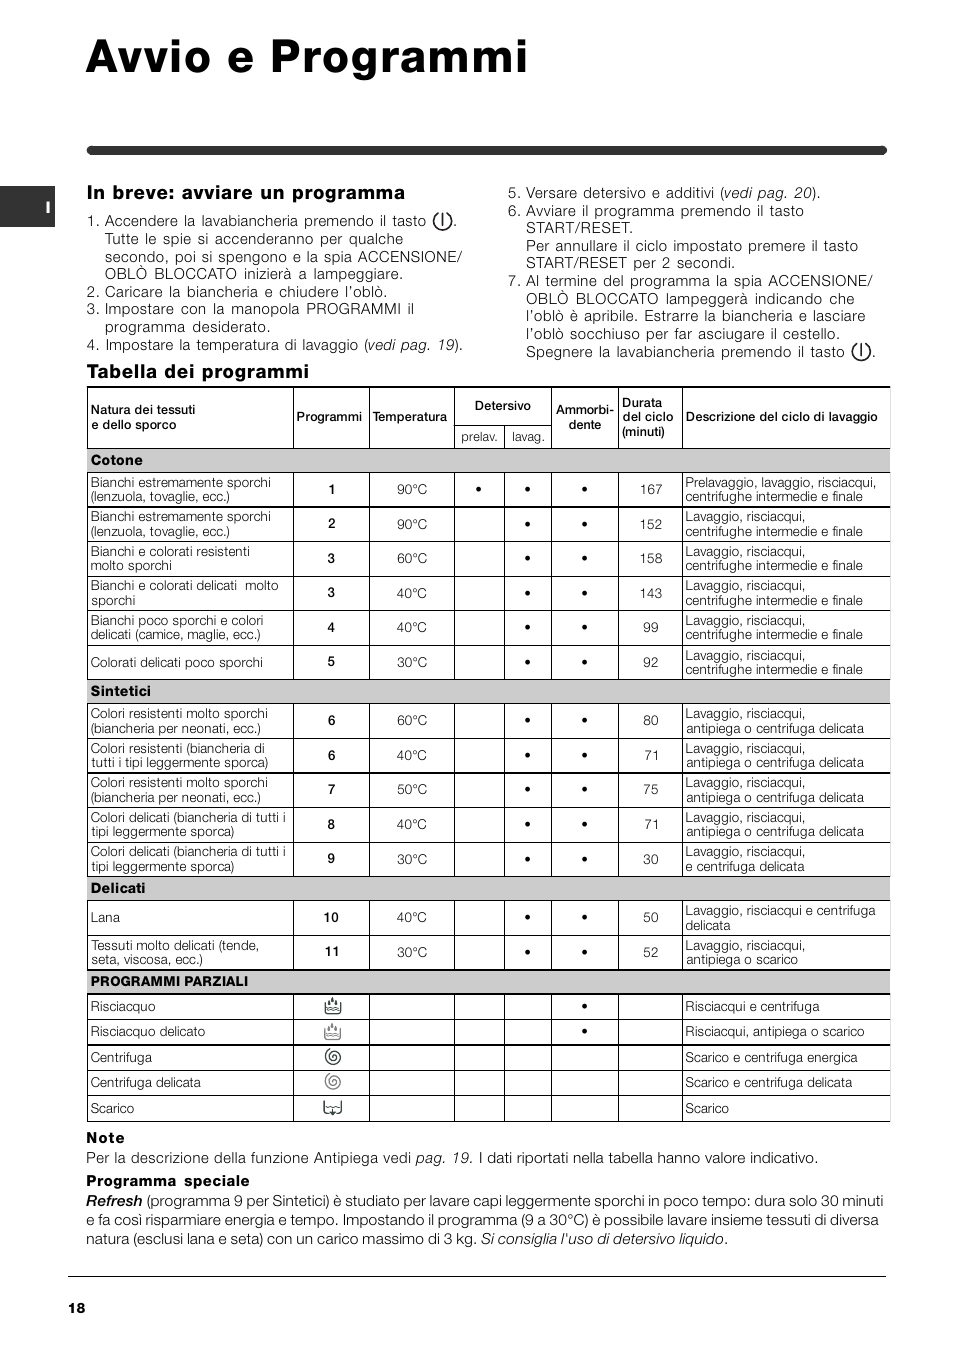 Avvio e programmi | Indesit WIN 101 User Manual | Page 18 / 72